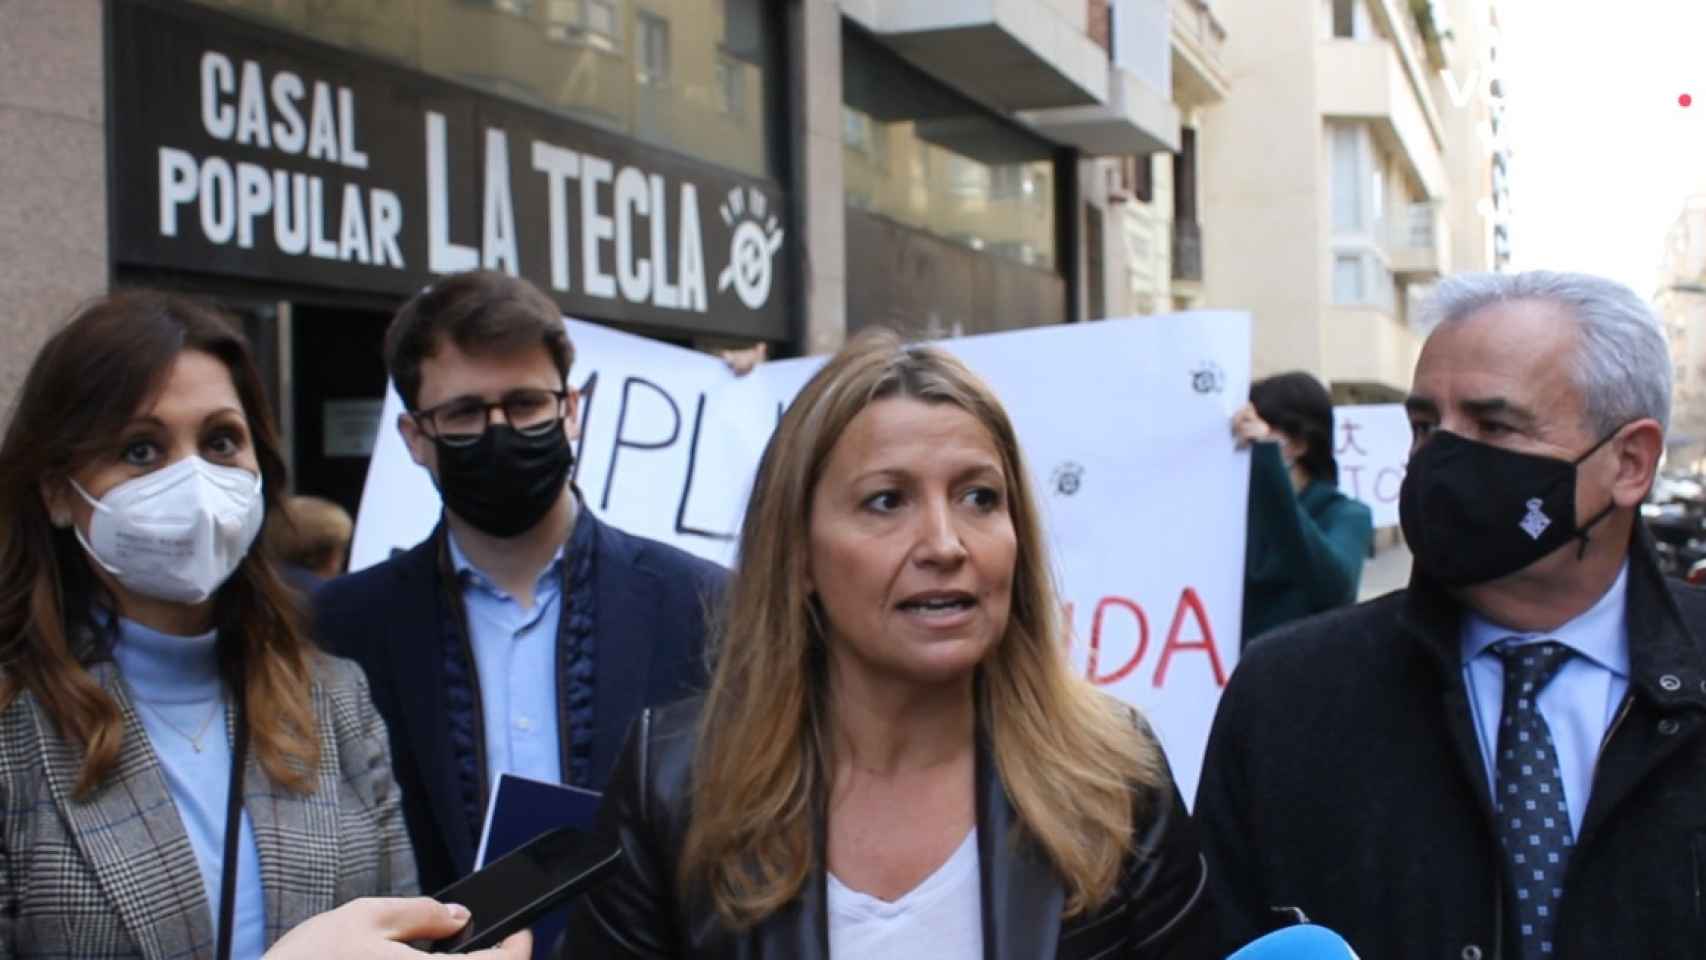 Valents reclama medidas contra la okupación en Barcelona. Een la foto, de izquierda a derecha: Marilén Barceló, Rodrigo Martínez, Eva Parera y Òscar Benítez / VALENTS